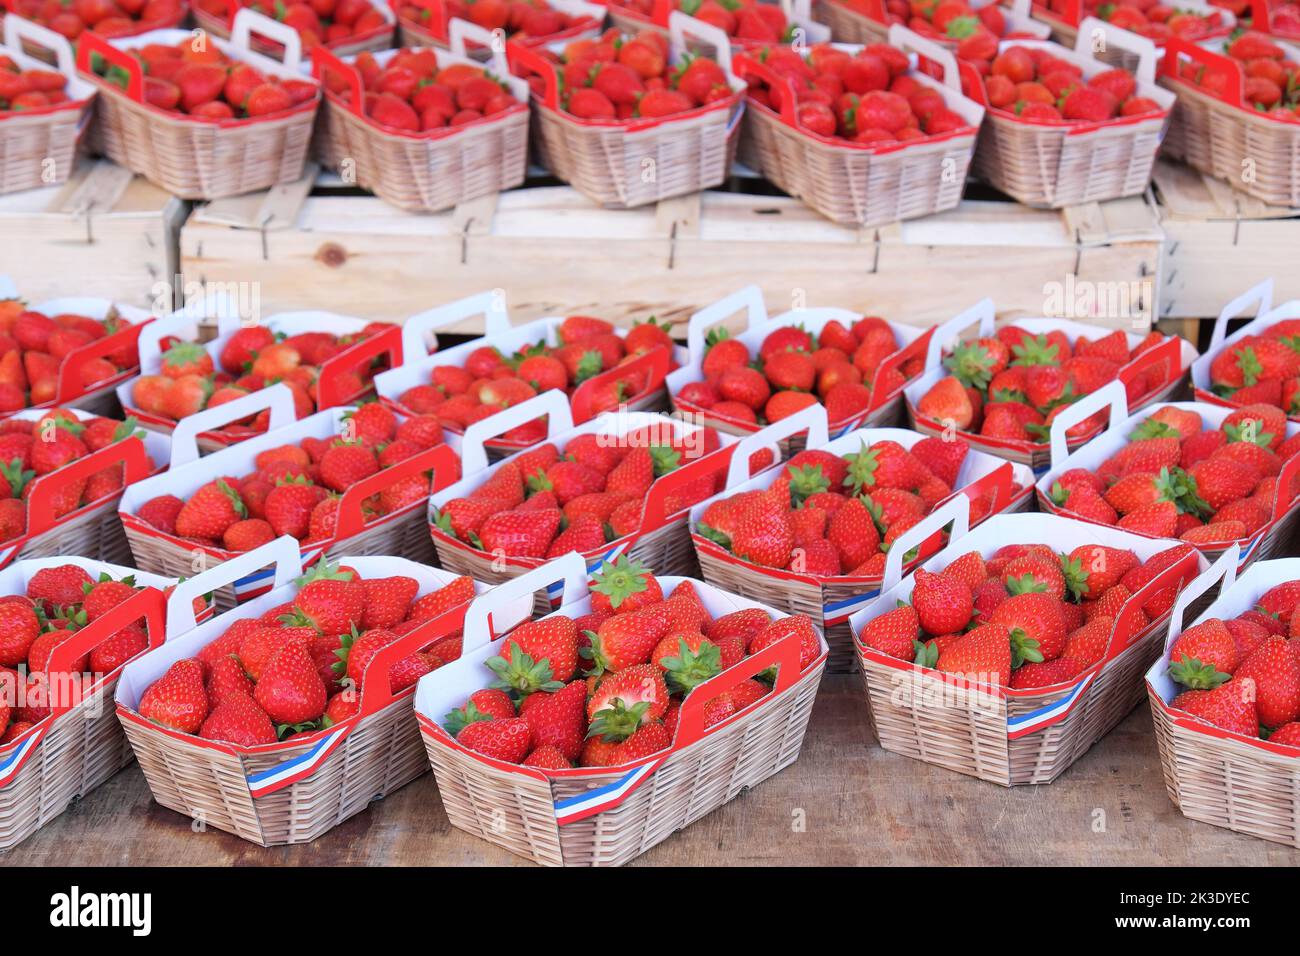 Fraises vendues par un producteur local sur un marché dans le département de Gironde (sud-ouest de la France) : punnet de fraises Banque D'Images